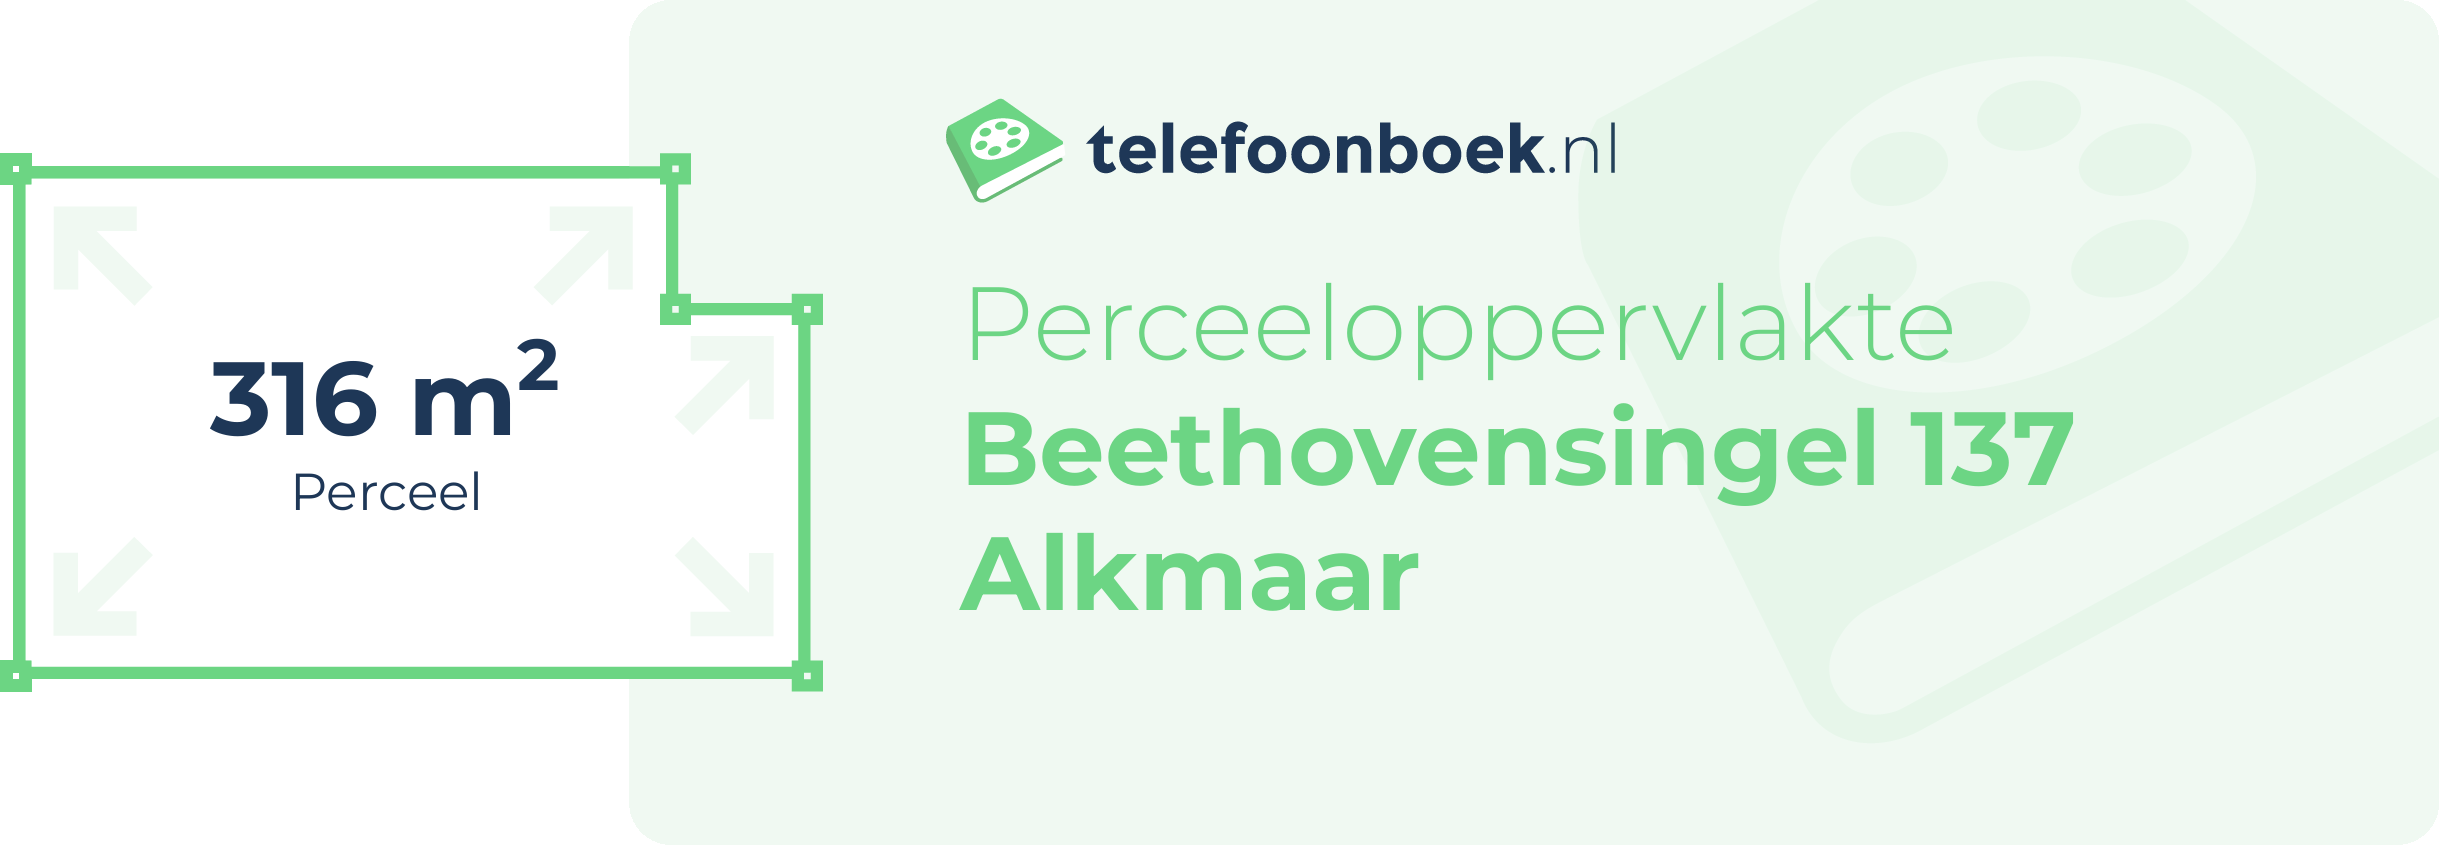 Perceeloppervlakte Beethovensingel 137 Alkmaar